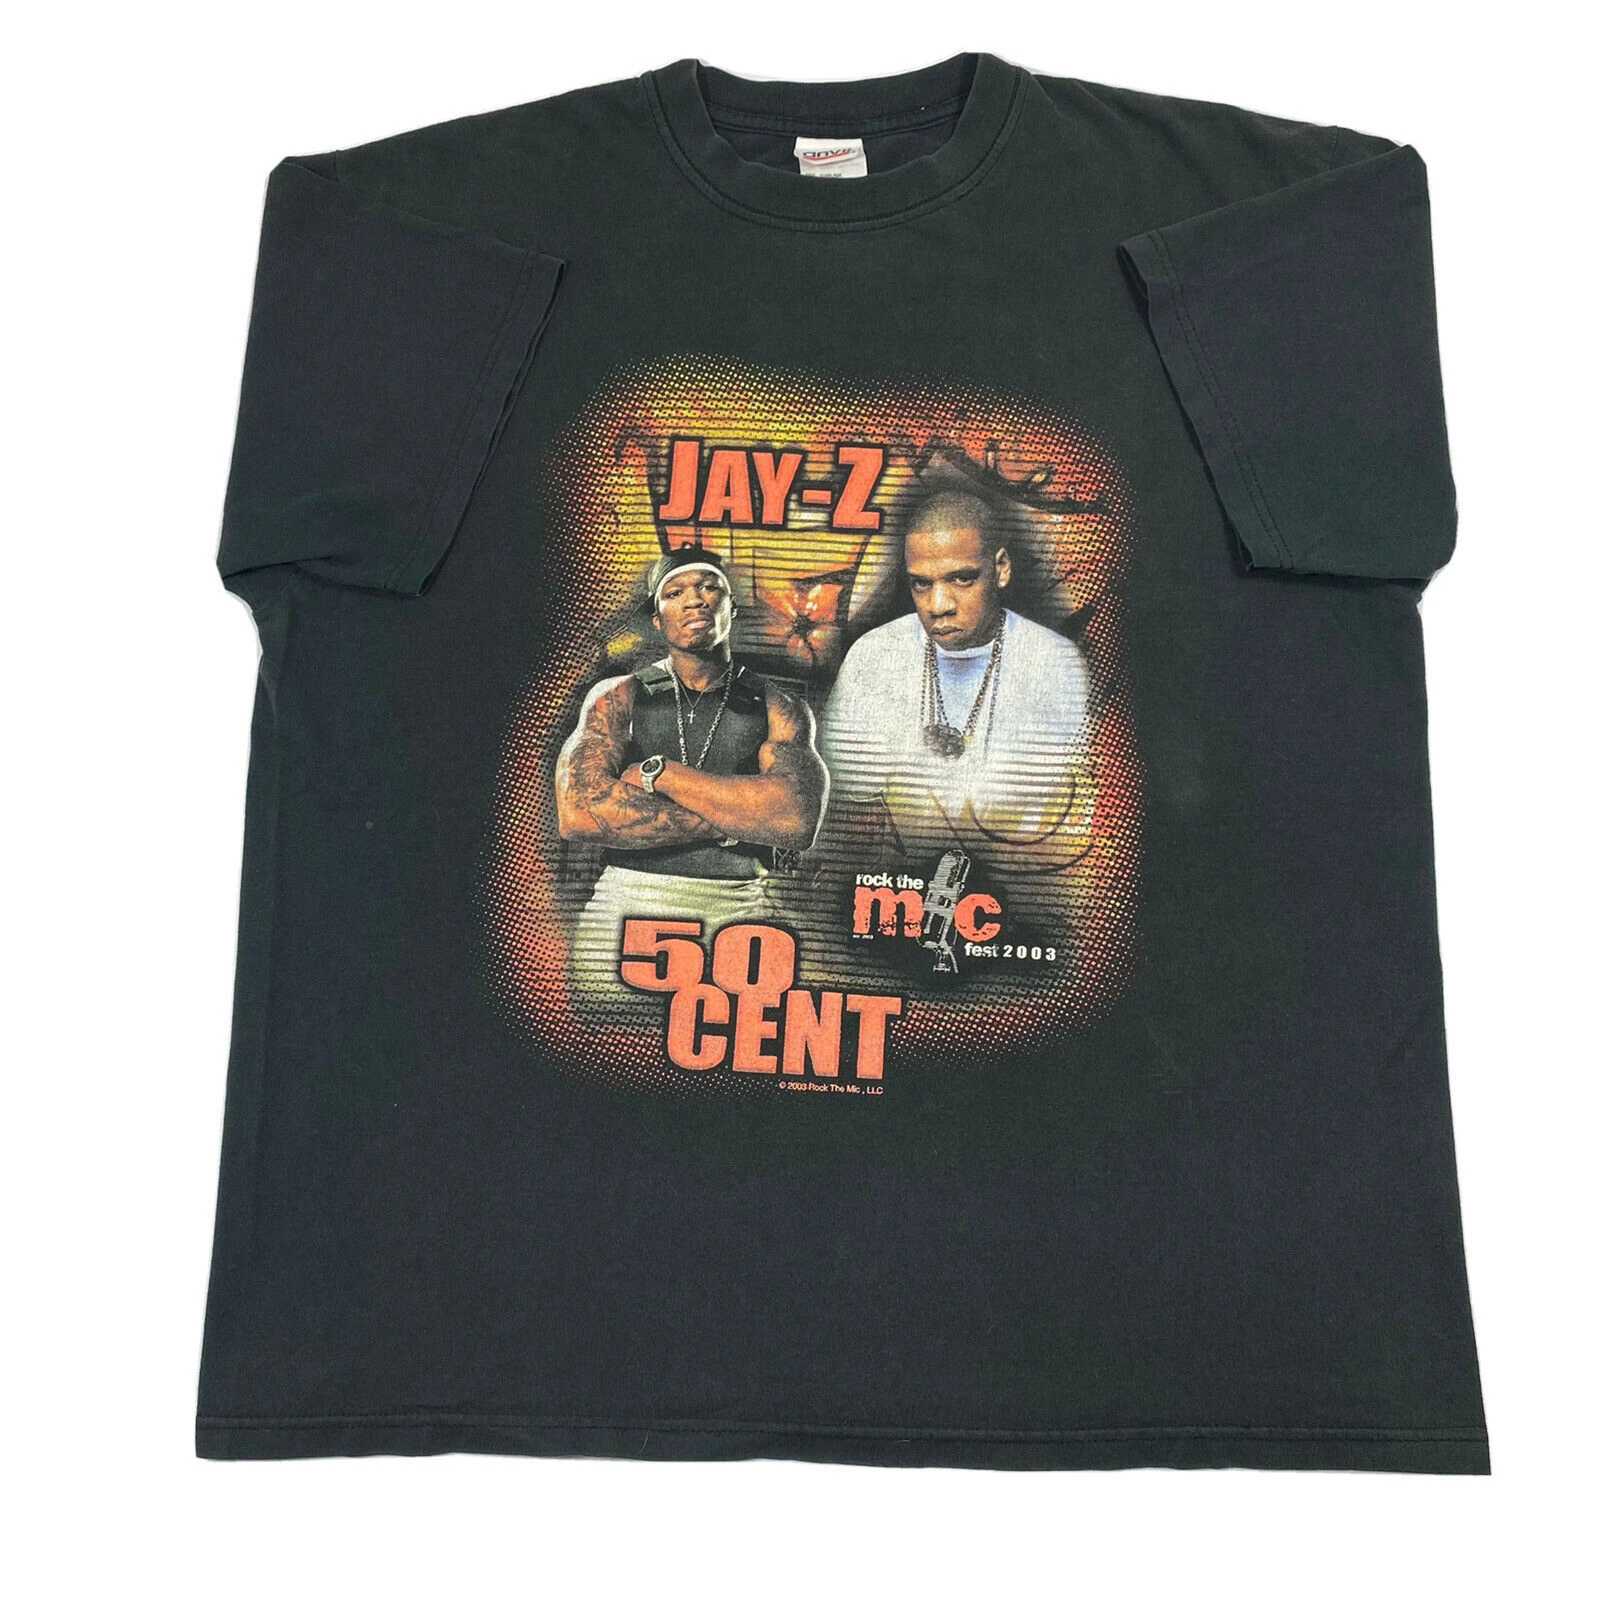 Rock The Mic Fest Jay Z 50cent rap t-shirt 2003 Size Large